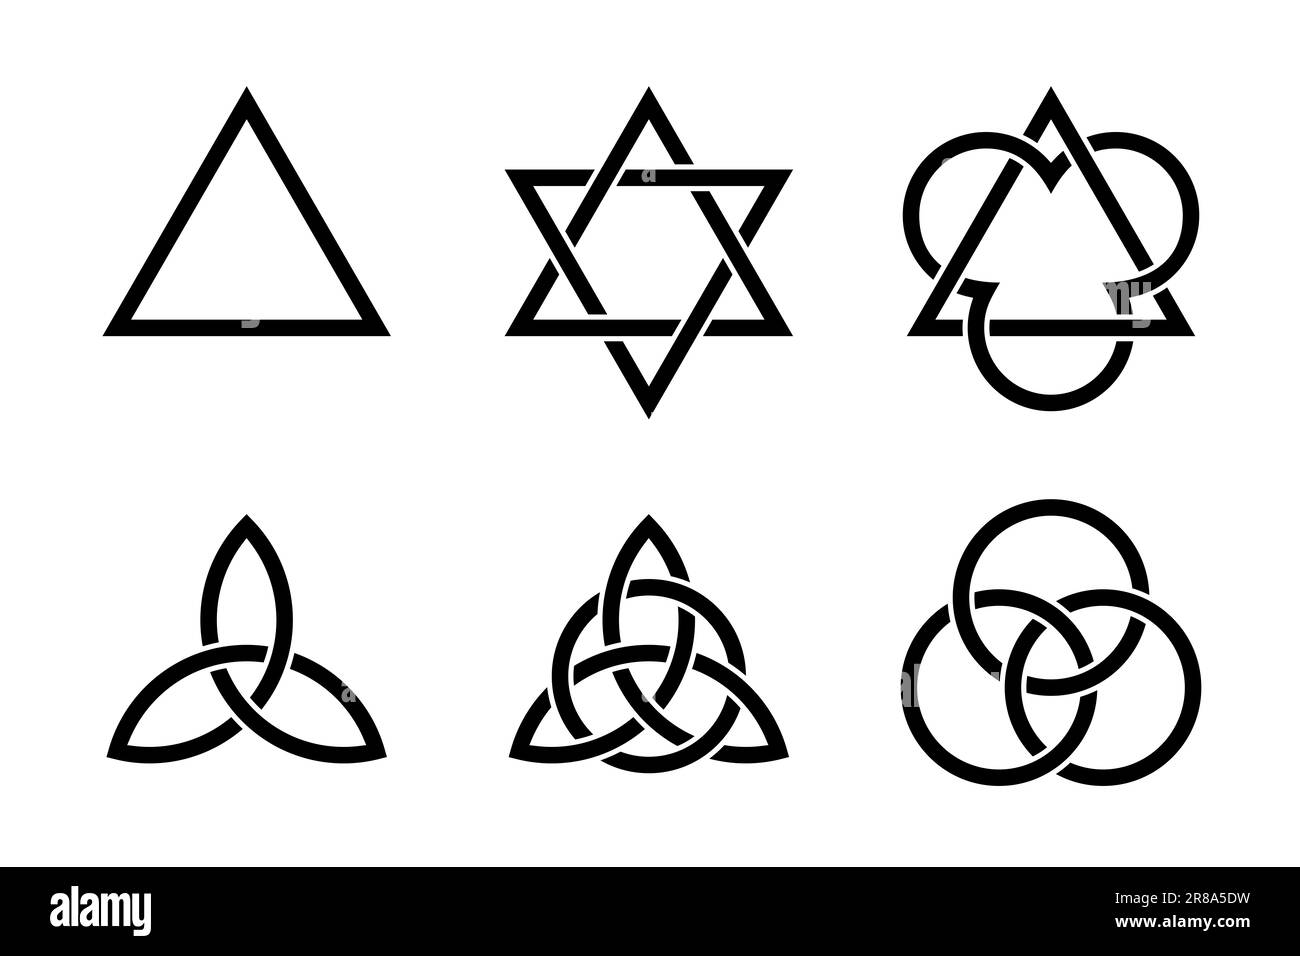 Dreifaltigkeitssymbole. Uralte Christen und Symbole, geformt durch Dreiecke, keltische Triquetras und Kreise. Stockfoto